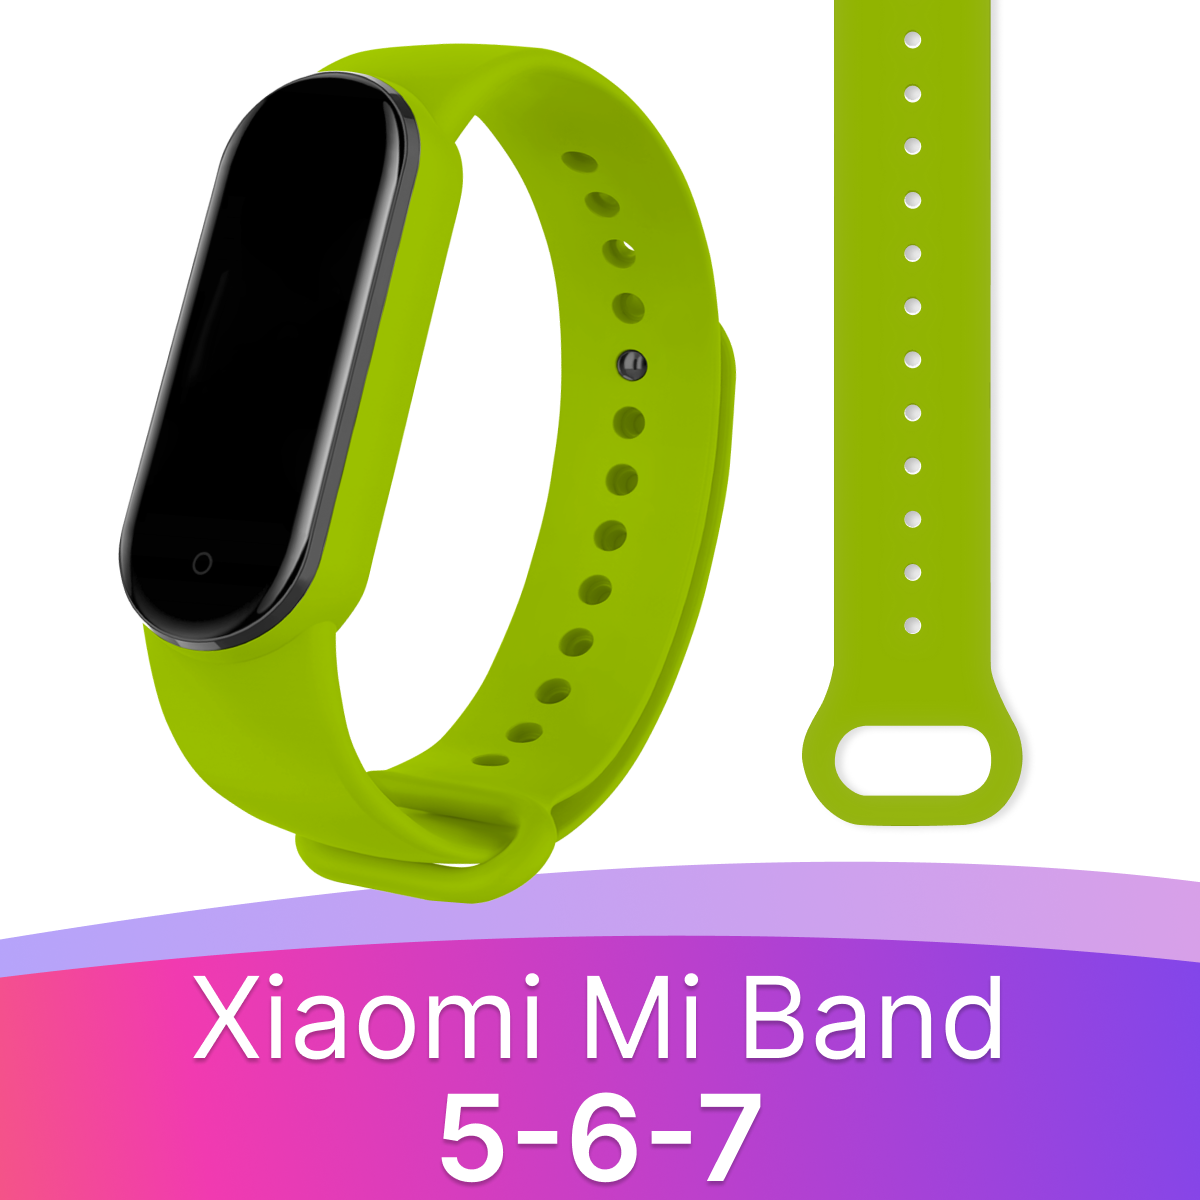 Силиконовый ремешок дляарт часов Xiaomi Mi Band 5 6 и 7 / Спортивныйенный браслет на фитнес трекер Сяоми Ми Бэнд 5 6 и 7 / Салатовый